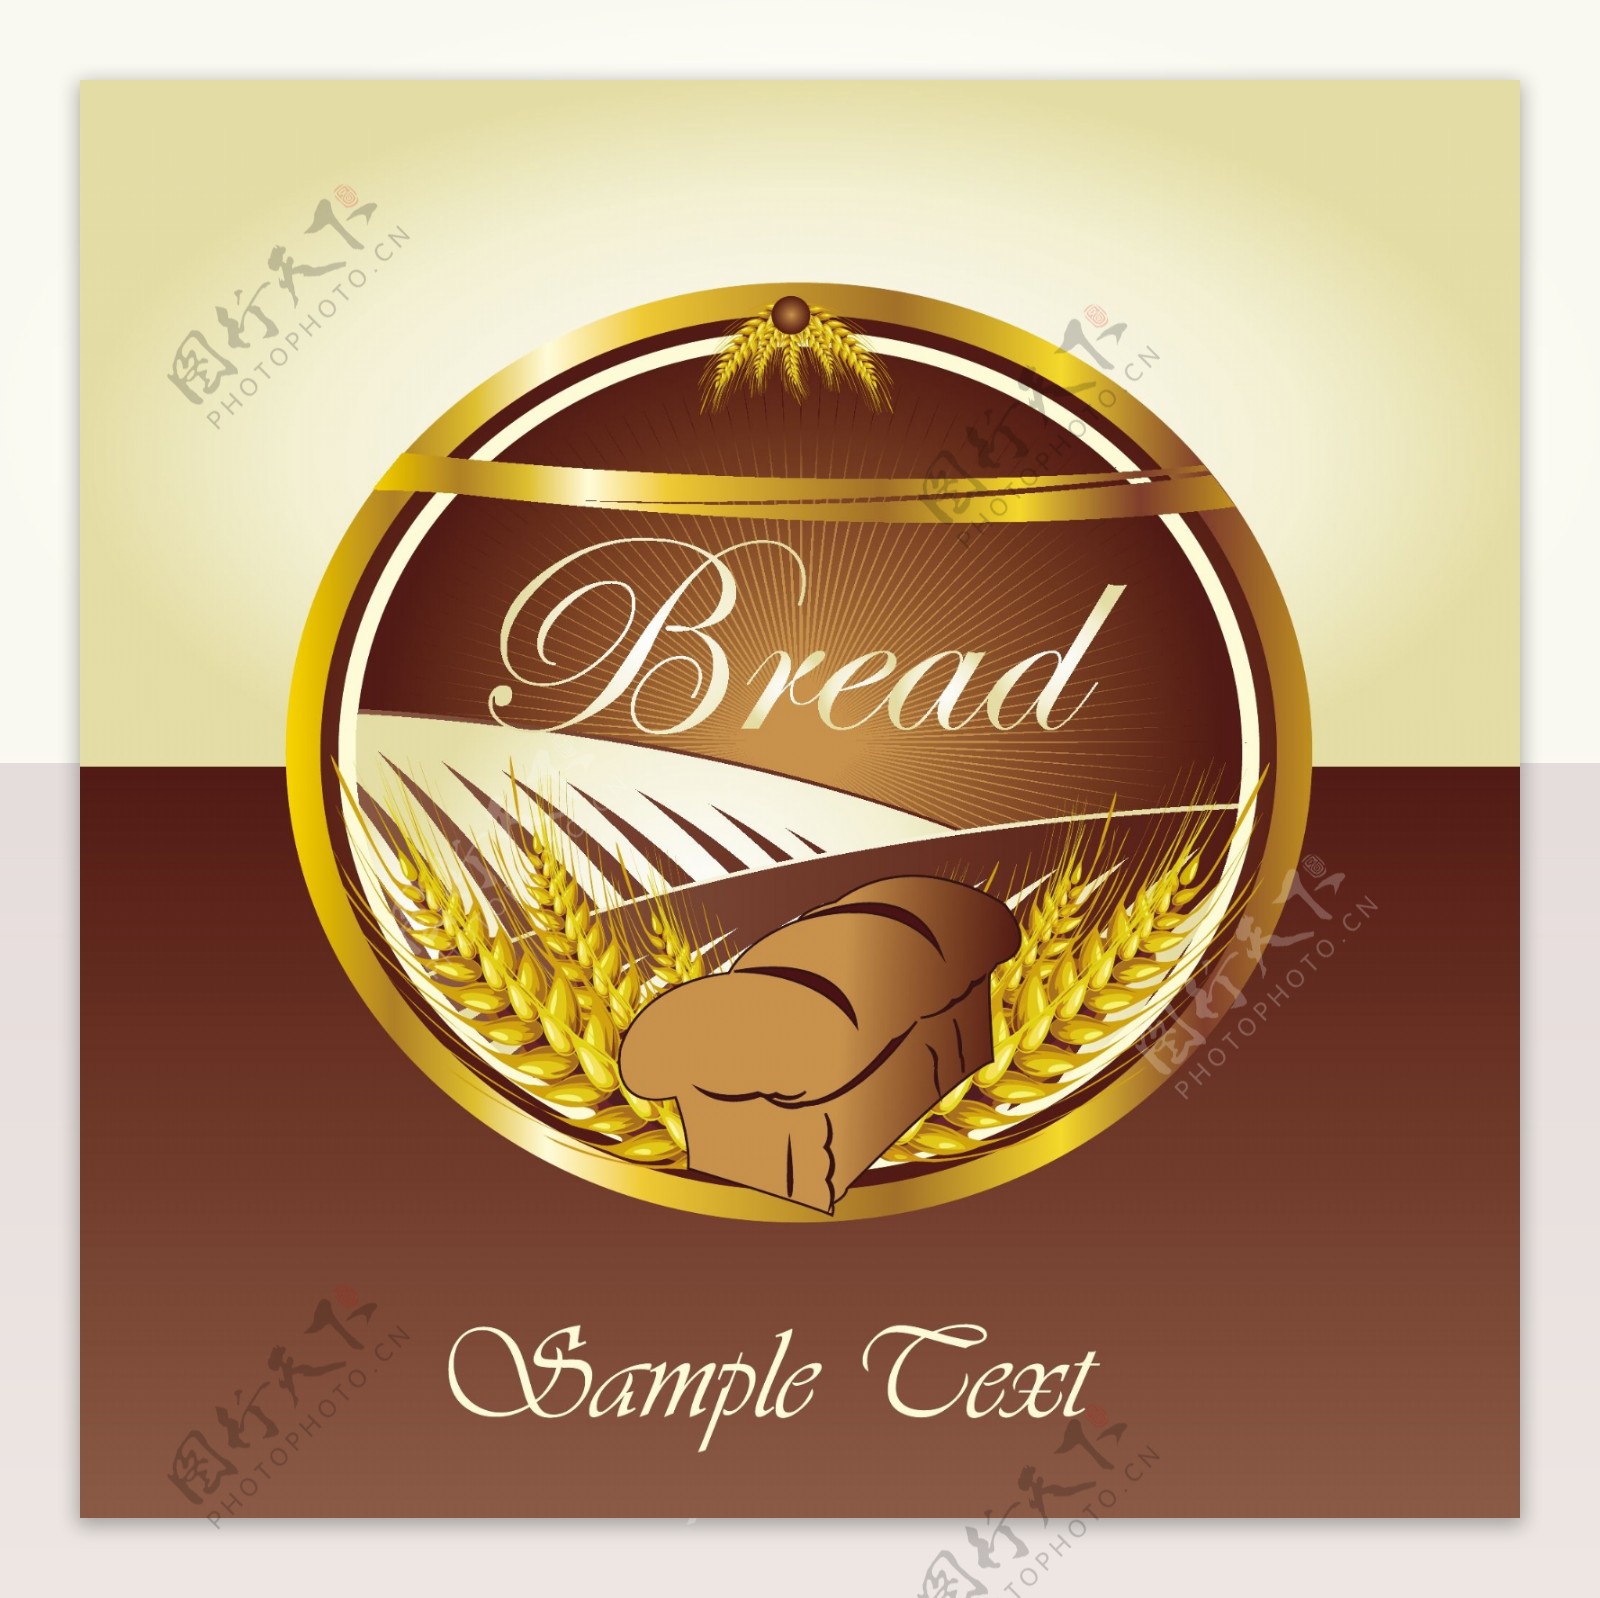 面包标签label矢量素材图片